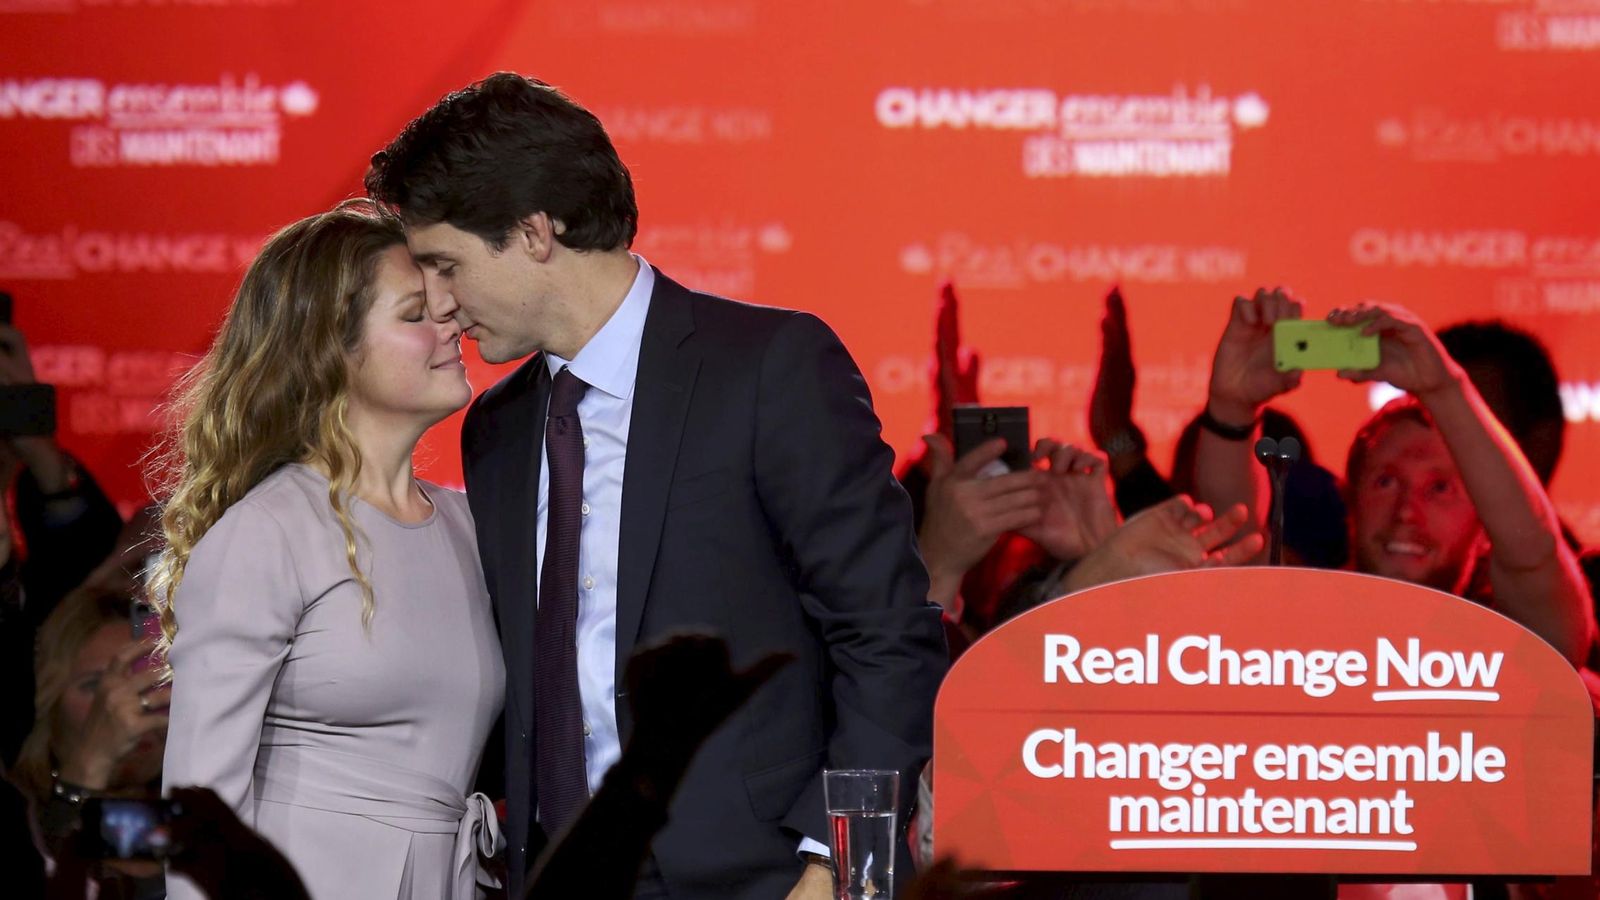 Foto: El líder del Partido Liberal Justin Trudeau besa a su mujer tras conocer su victoria en las elecciones de Canadá, el 19 de octubre de 2015 (Reuters).